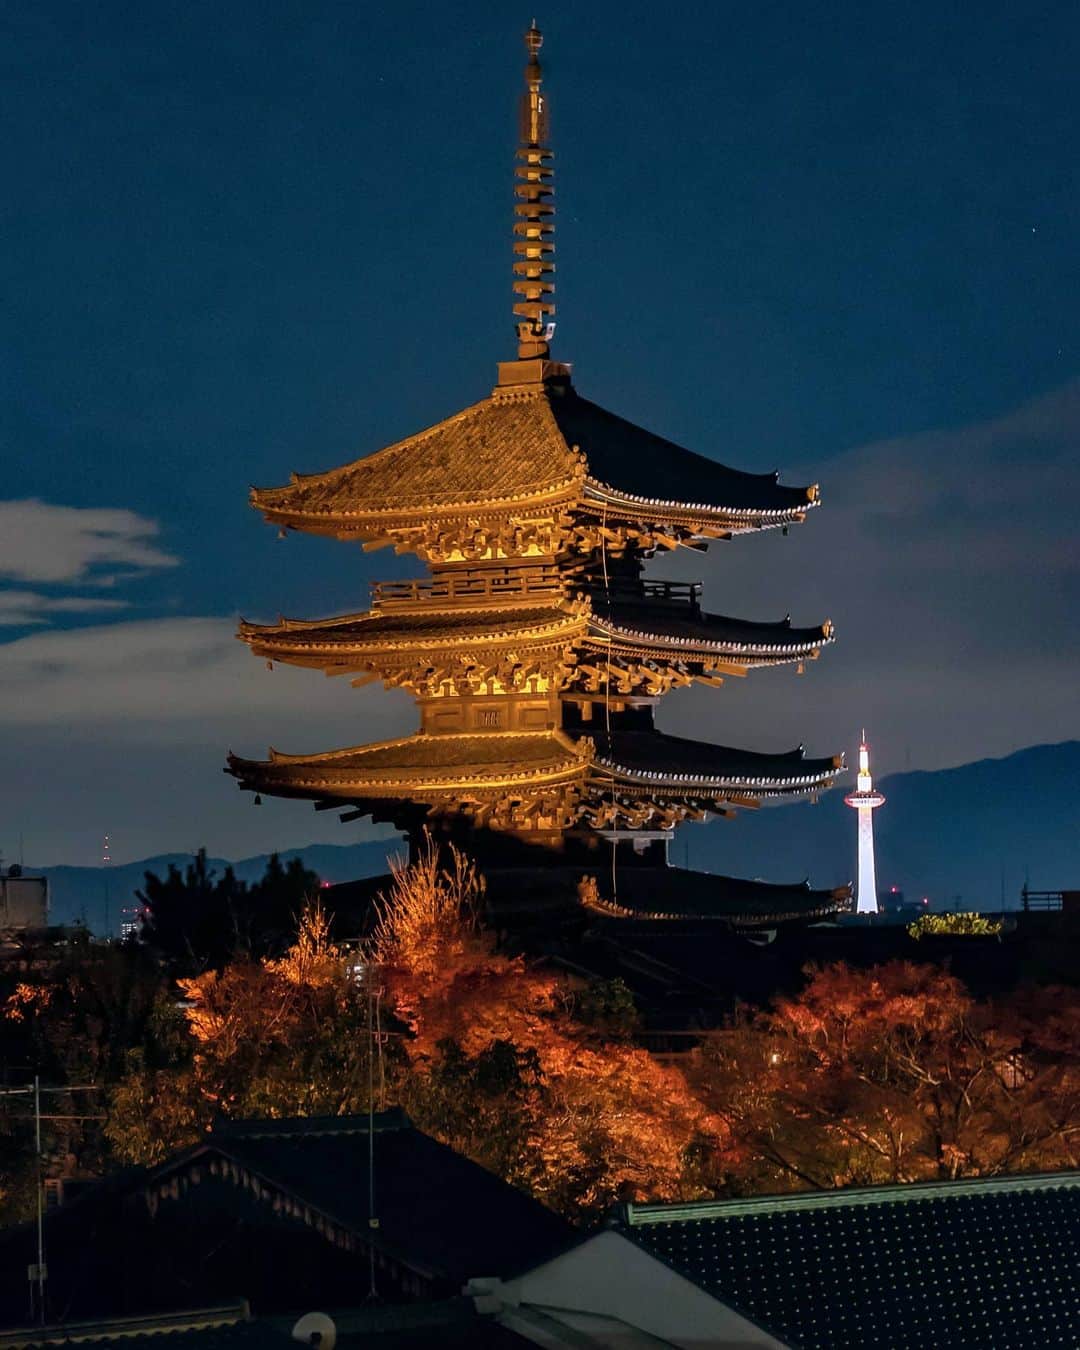 masayaのインスタグラム：「八坂の塔と京都タワー Yasaka Pagoda Kyoto 手持ち撮影 先日のスカイツリーの手持ち撮影はシャッタースピード1/20だったが、自己新記録の1/15での撮影。 ほぼ手ぶれの中唯一の１枚。 八坂の塔にピントを合わせなおかつ京都タワーもあまりボケさせたくないので、絞りはF6.3。かなりの暗さなので、ISO12800に設定。(それでも暗い) 明るく設定し過ぎると京都タワーのディテールが飛んでしまうので注意。 あとはLightroomで明度調整とノイズの軽減。 Lens: SEL24105G」